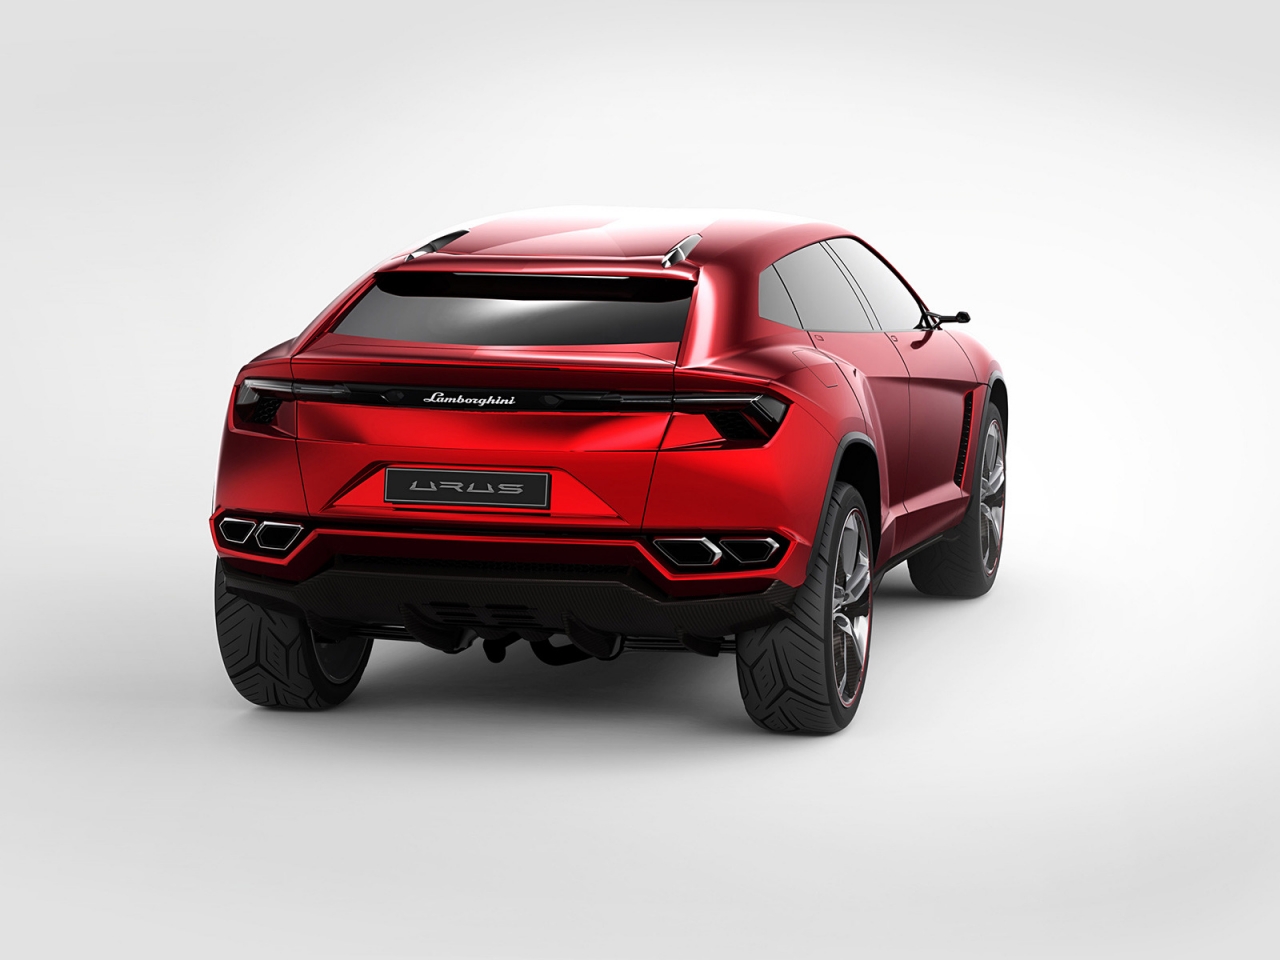 Lamborghini Urus Concept Rear Studio for 1280 x 960 resolution